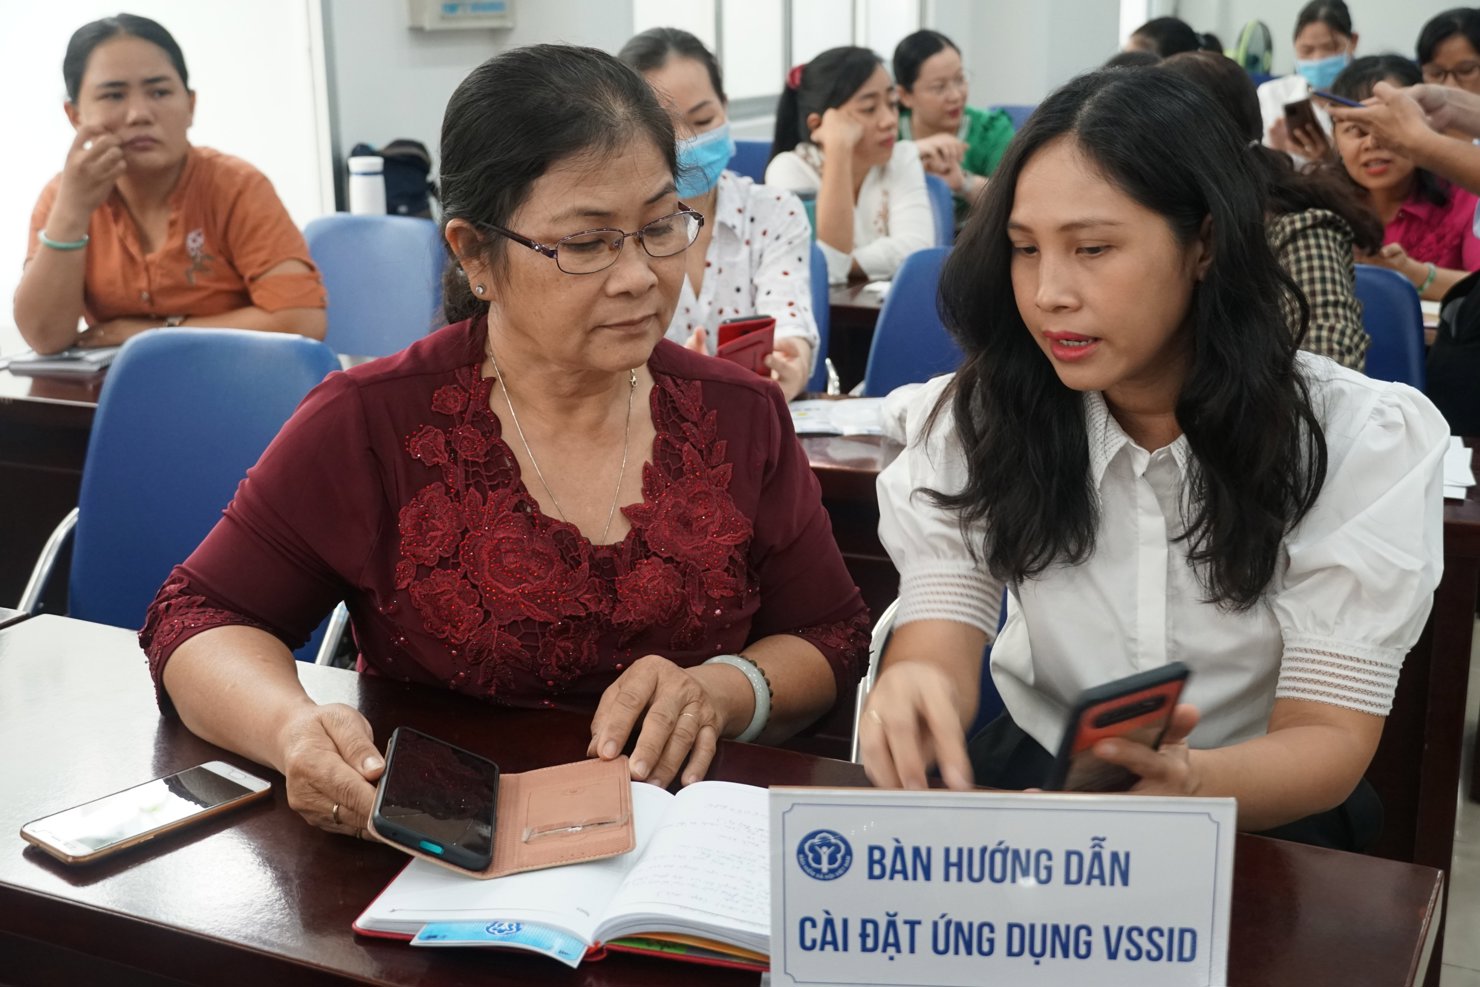 Cán bộ, viên chức BHXH TP.Hồ Chí Minh tư vấn, hướng dẫn người dân sử dụng ứng dụng VssID - BHXH số.